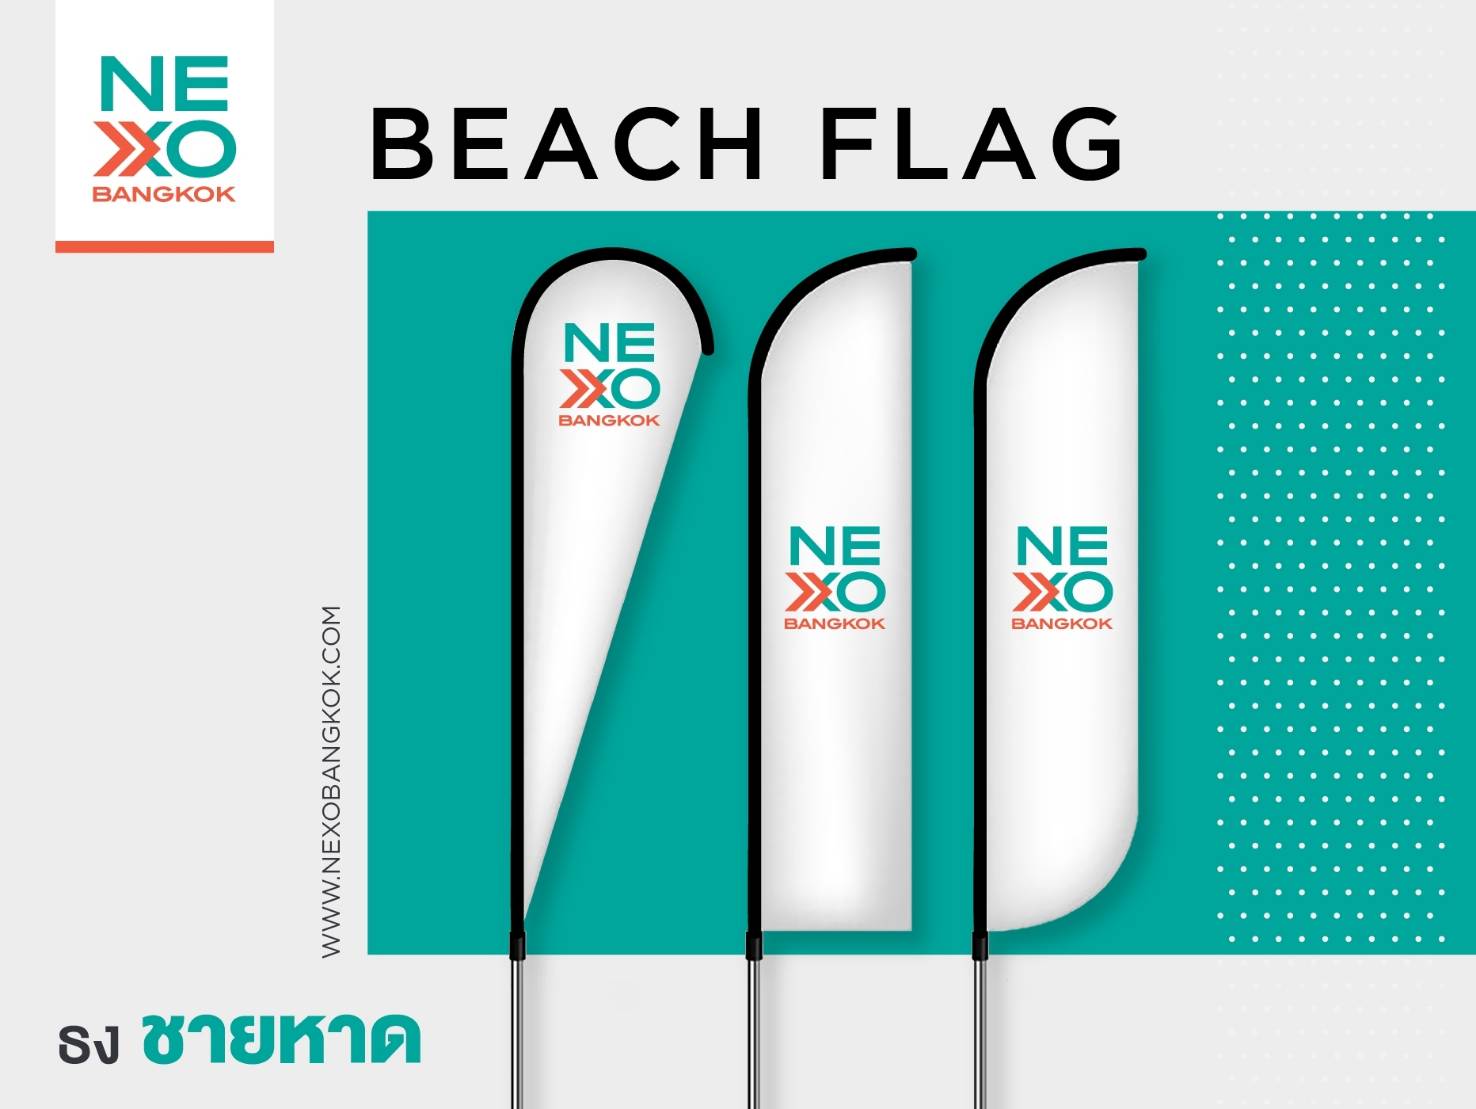 ธงชายหาด / ธงปีกนก (Beach flag)